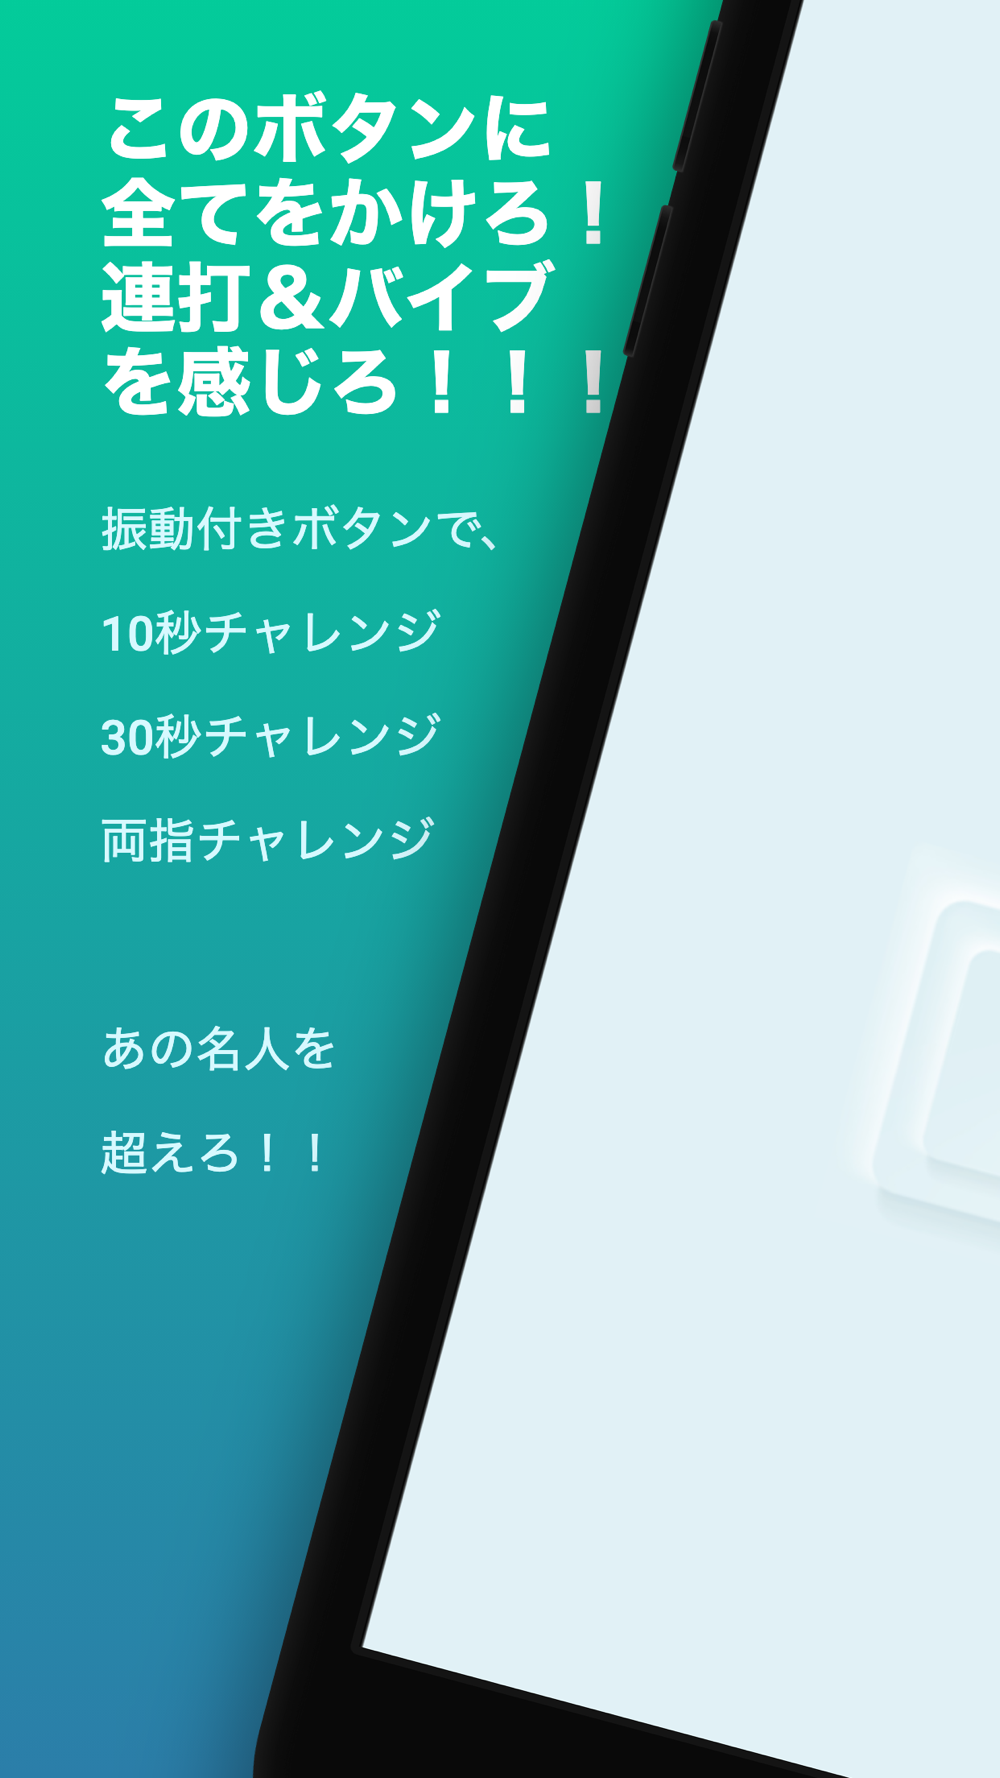 連打力測定 全集中の呼吸チャレンジ 振動付きボタン連打ゲーム Free Download App For Iphone Steprimo Com